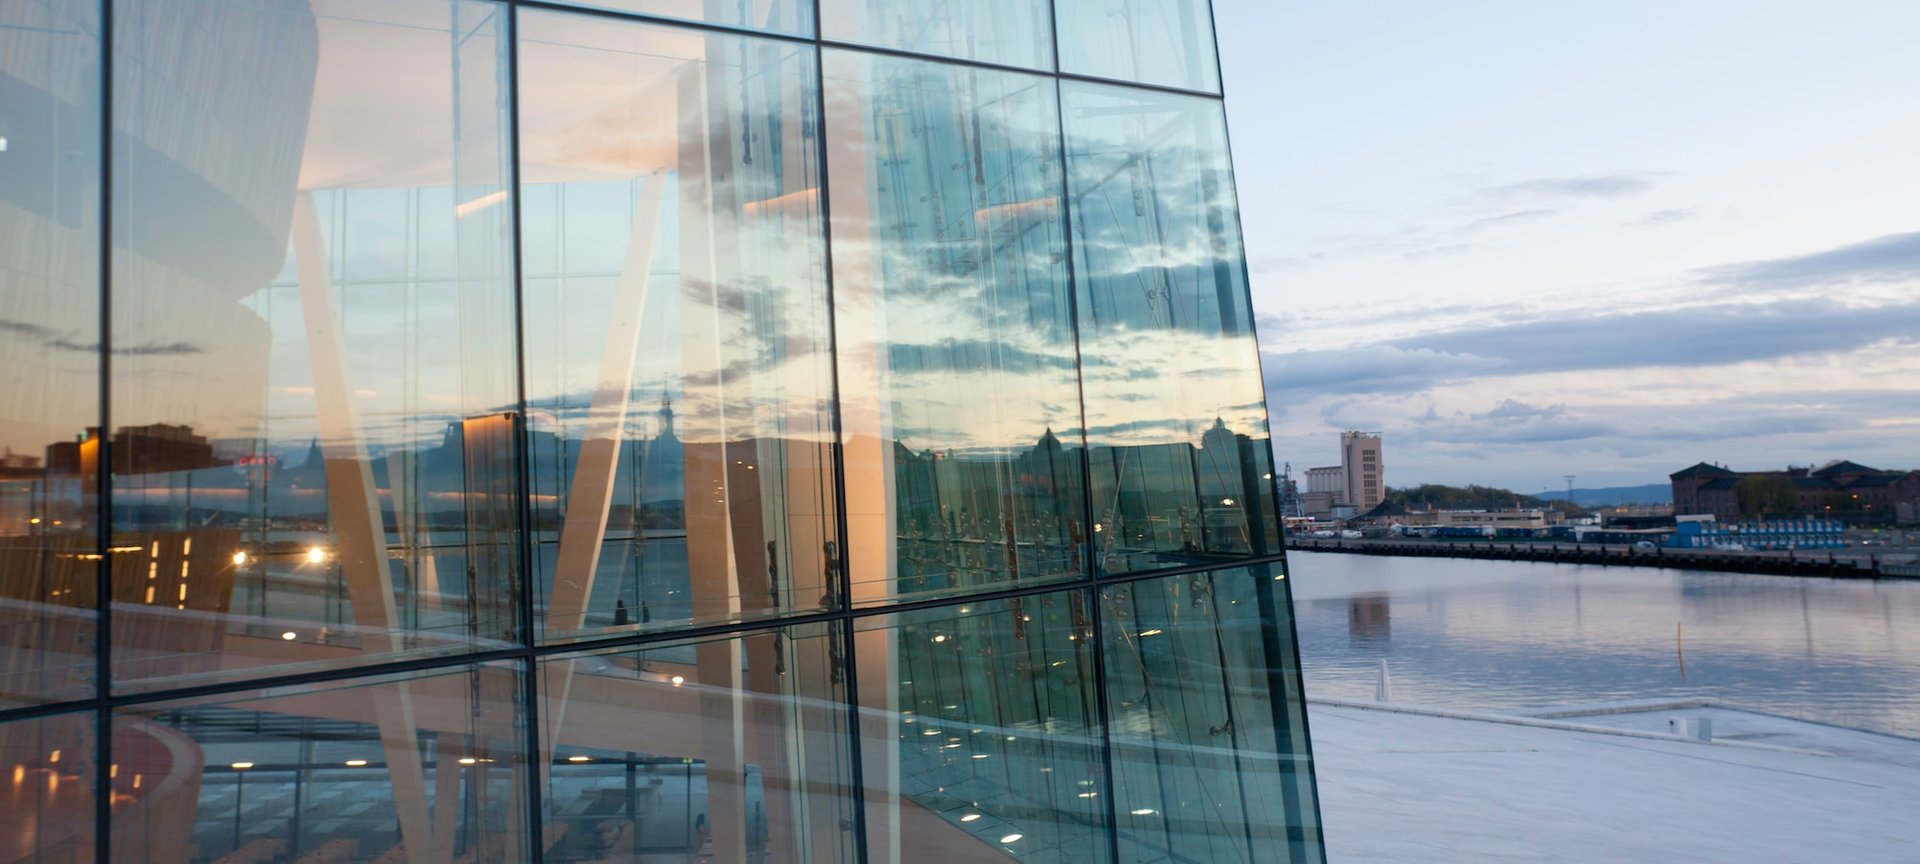 Den norske opera nærbilde av glassfasade